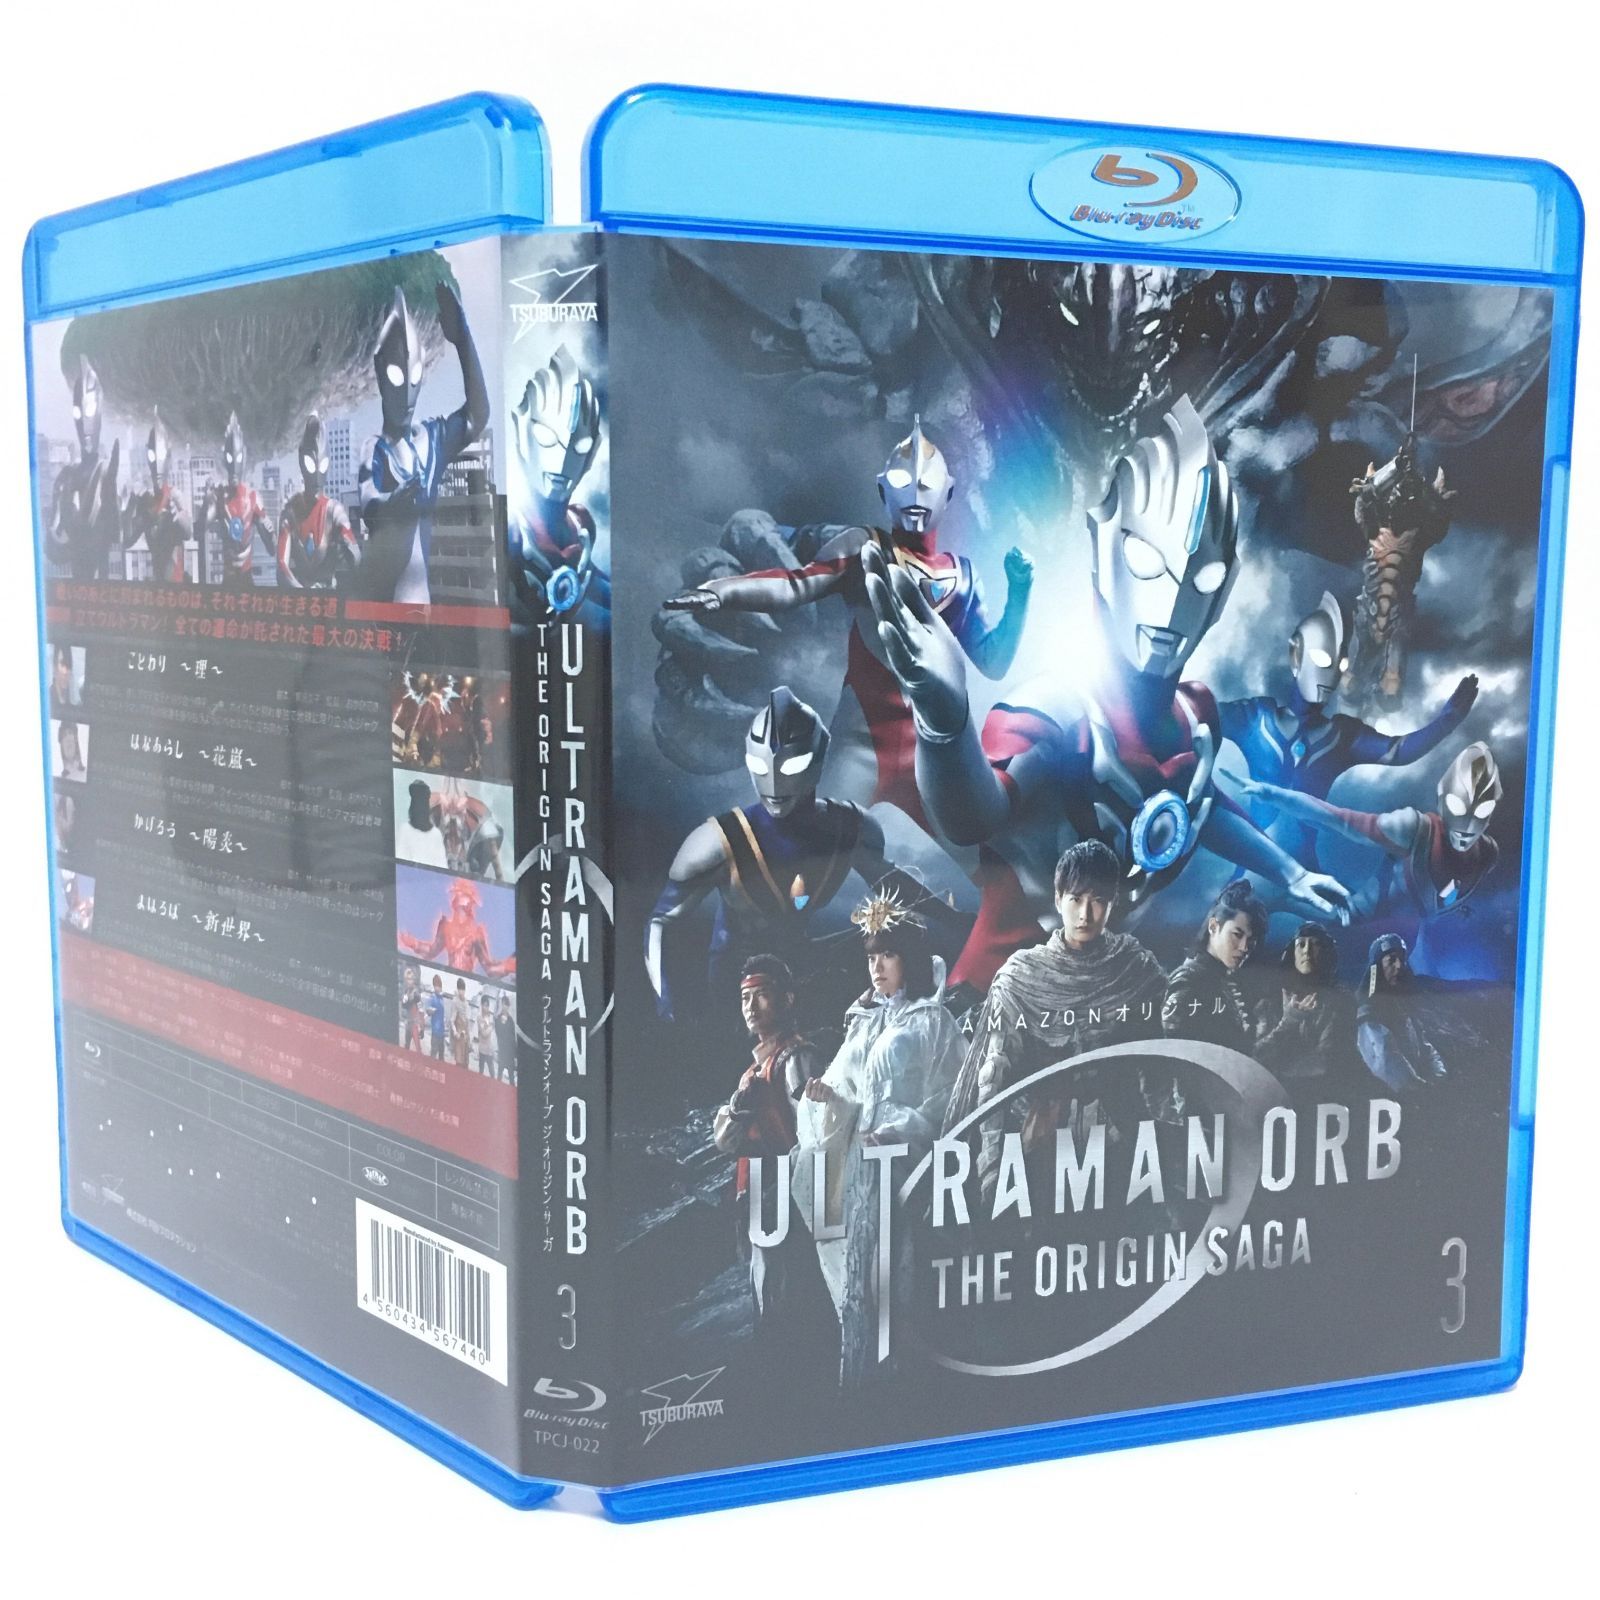 6,020円ウルトラマンオーブ THE ORIGIN SAGA     Blu-rayセット